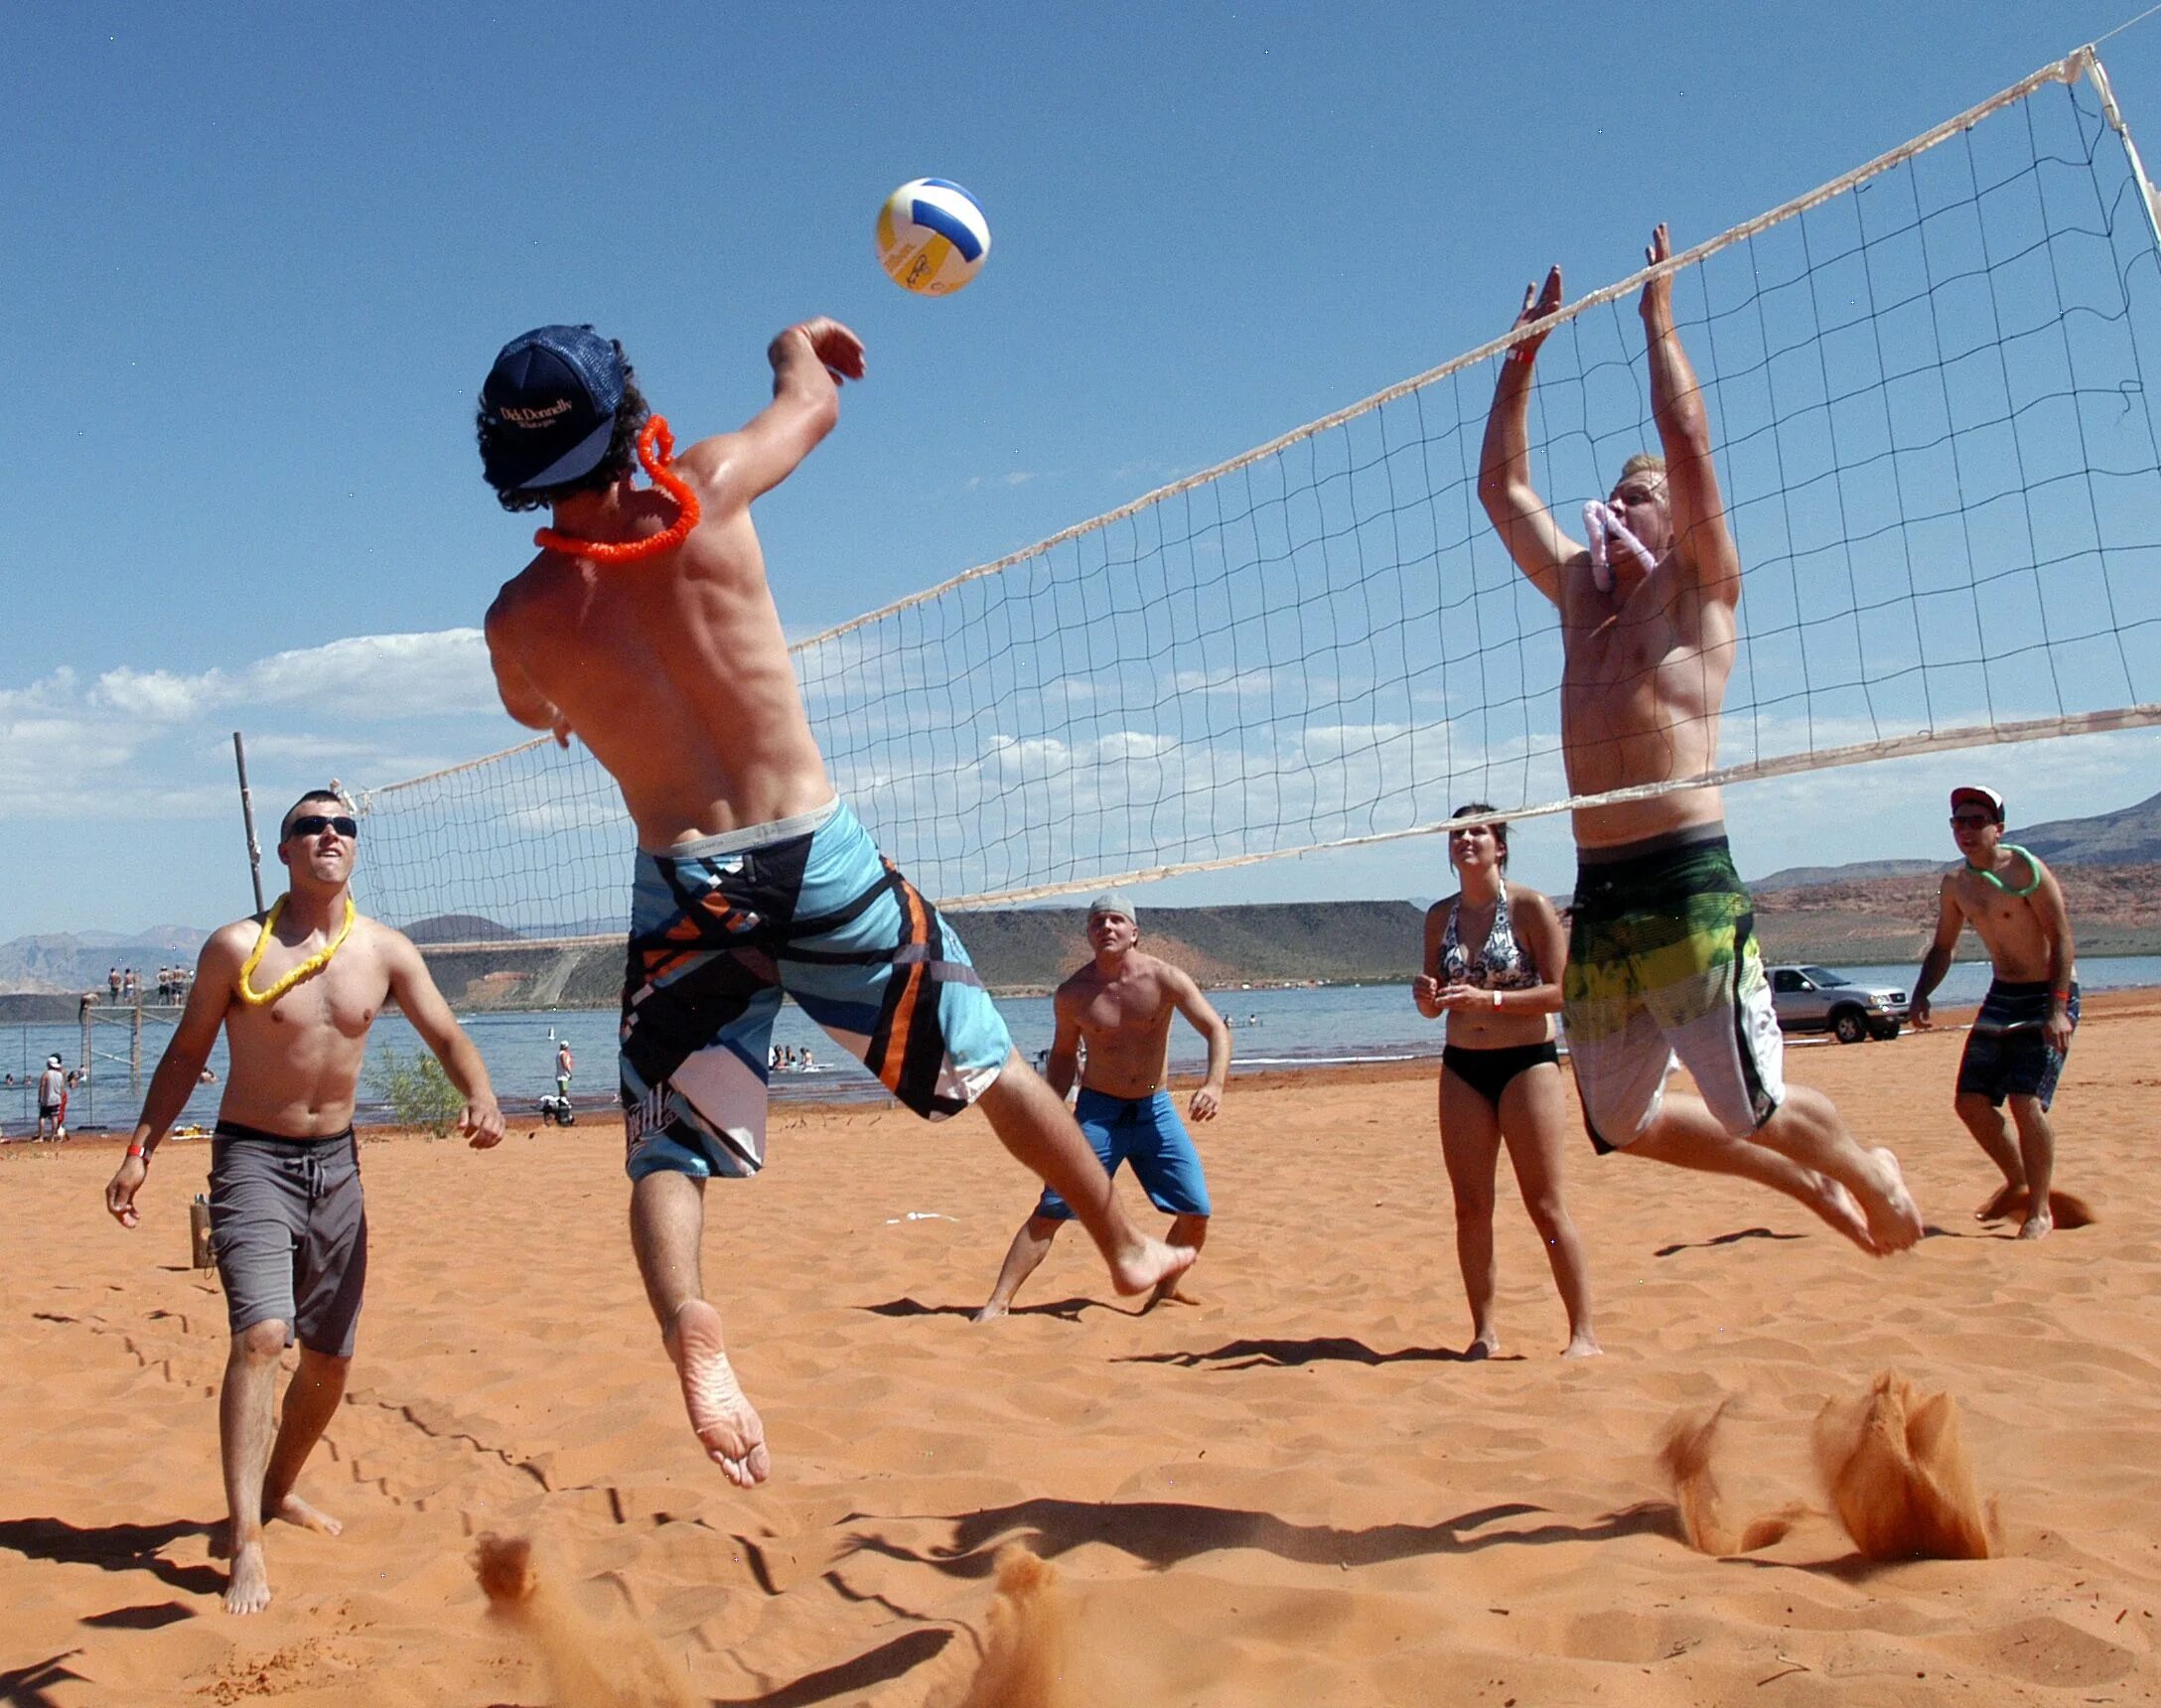 Пляжный волейбол. Волейбол на пляже. Люди играют в волейбол на пляже. Пляжный волейбол на пляже. Спортивные игры фотографии